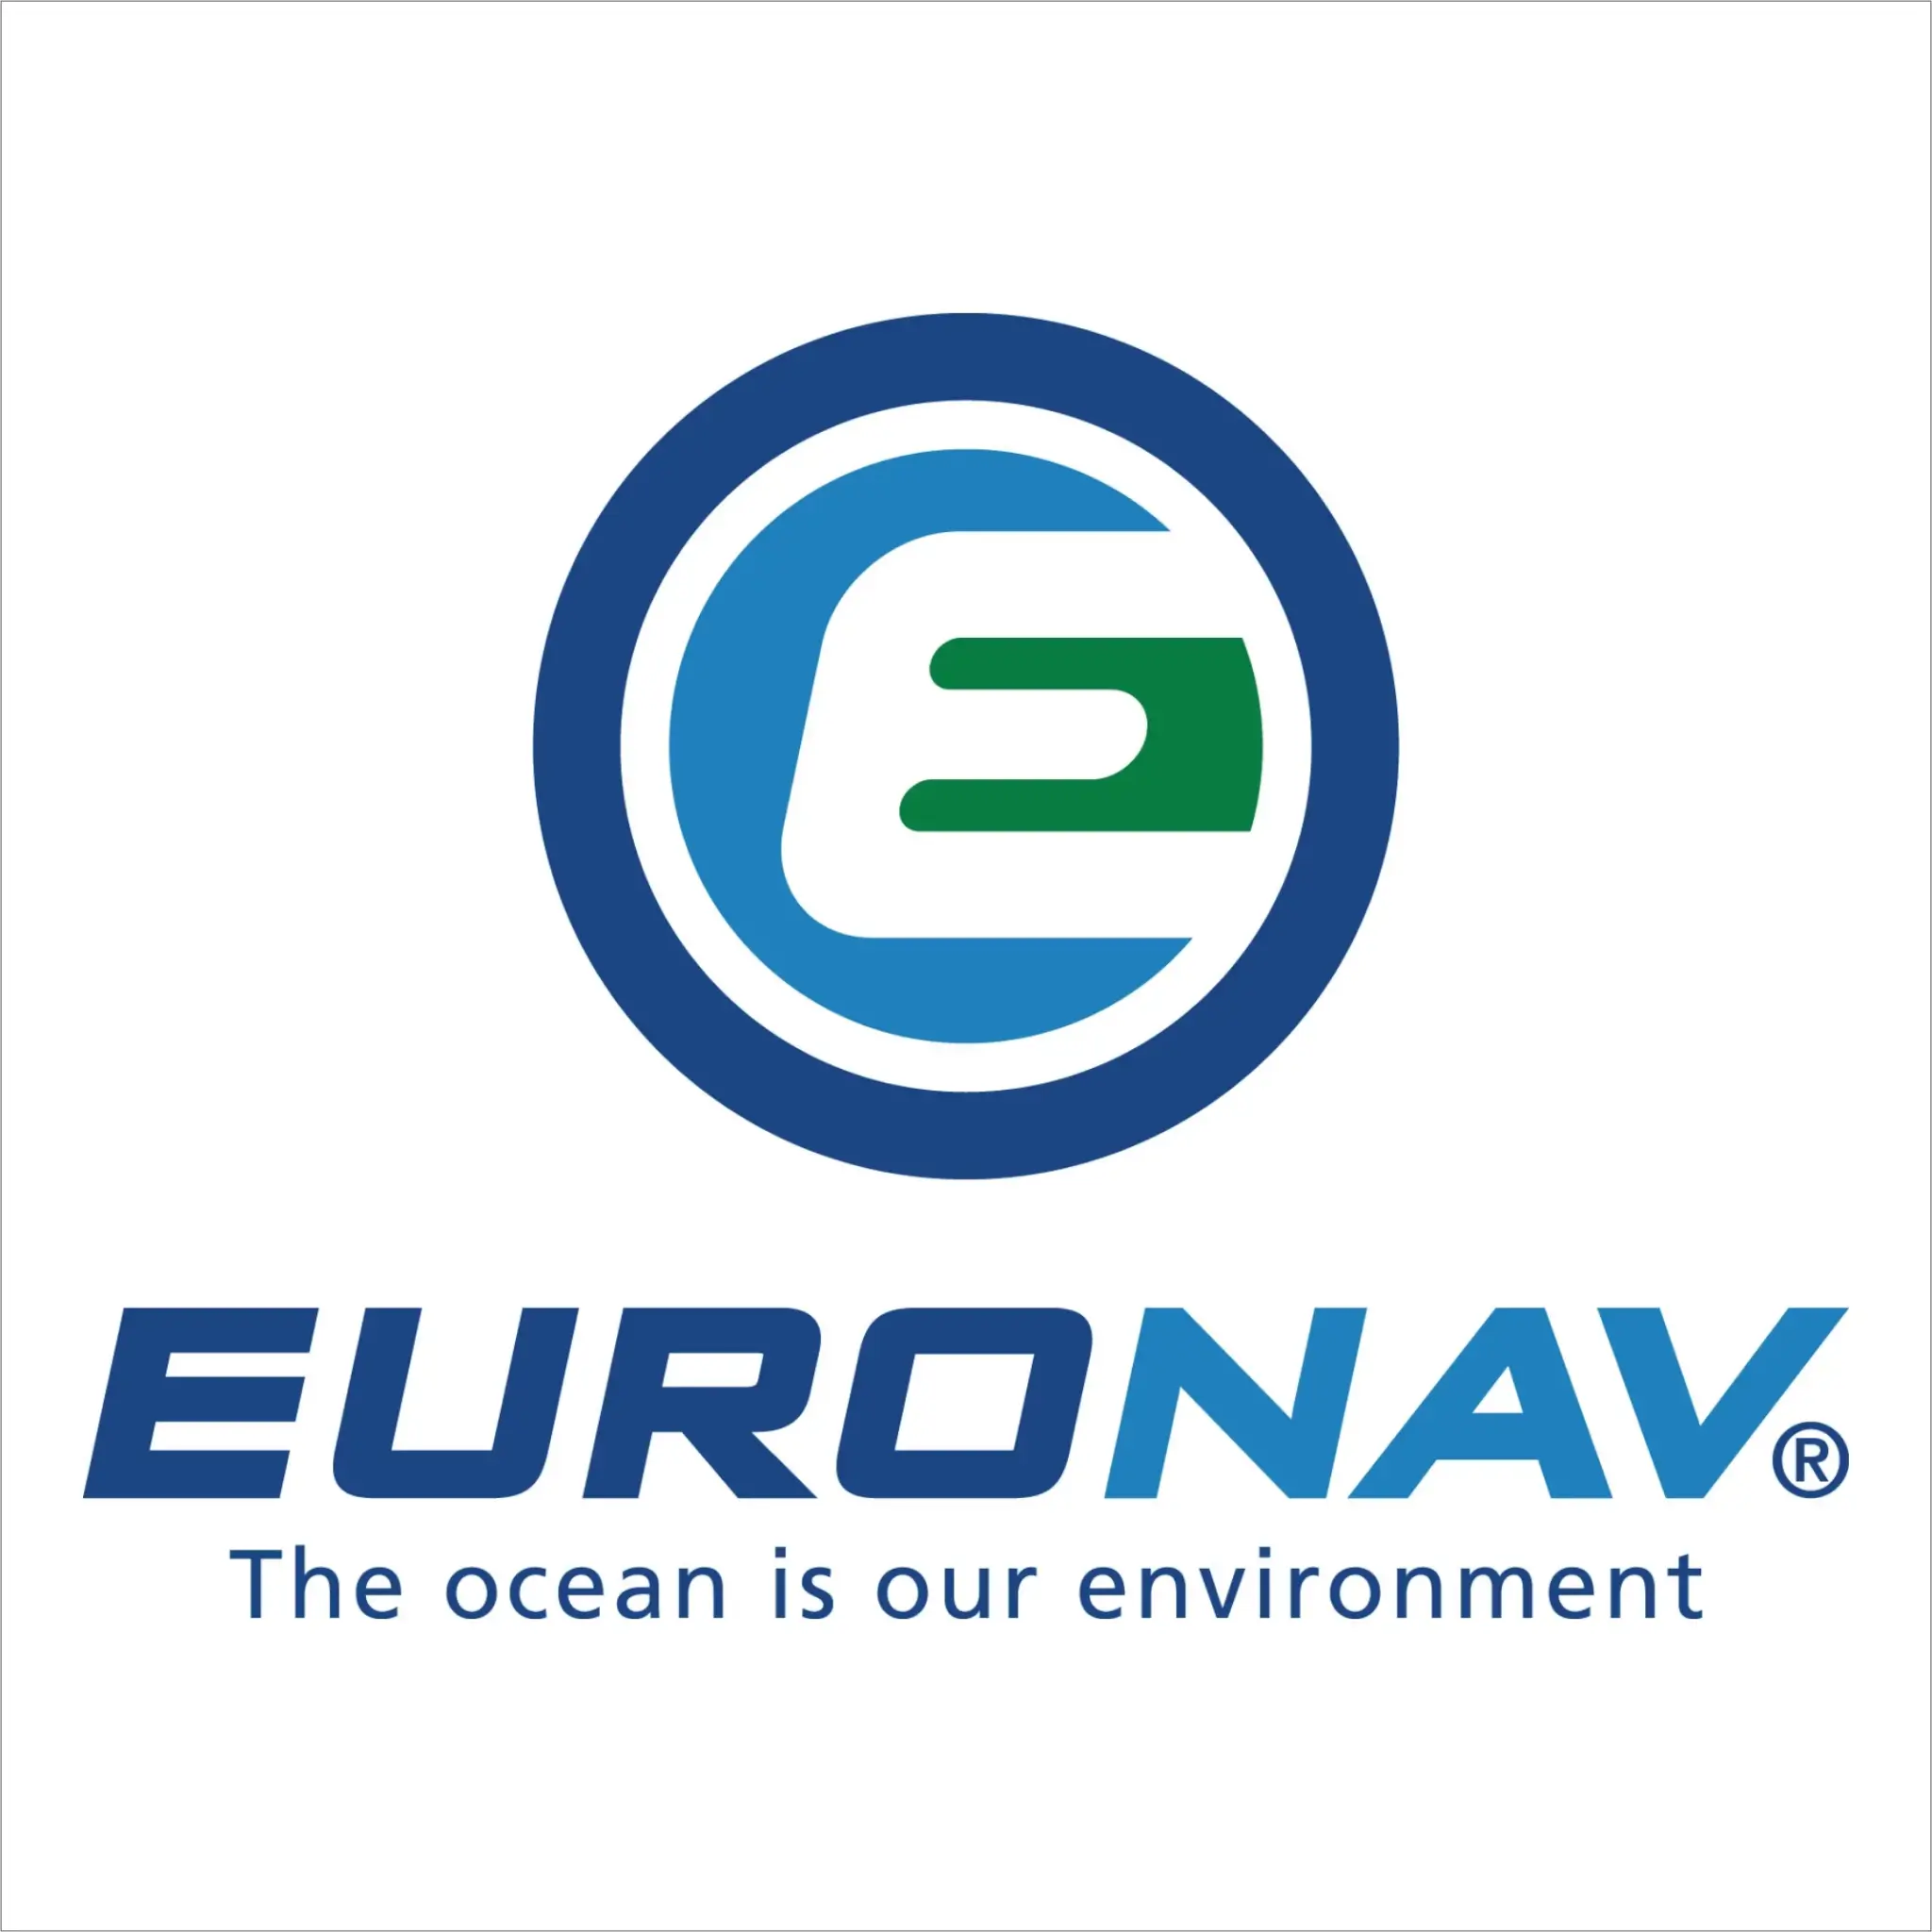 Euronav logo